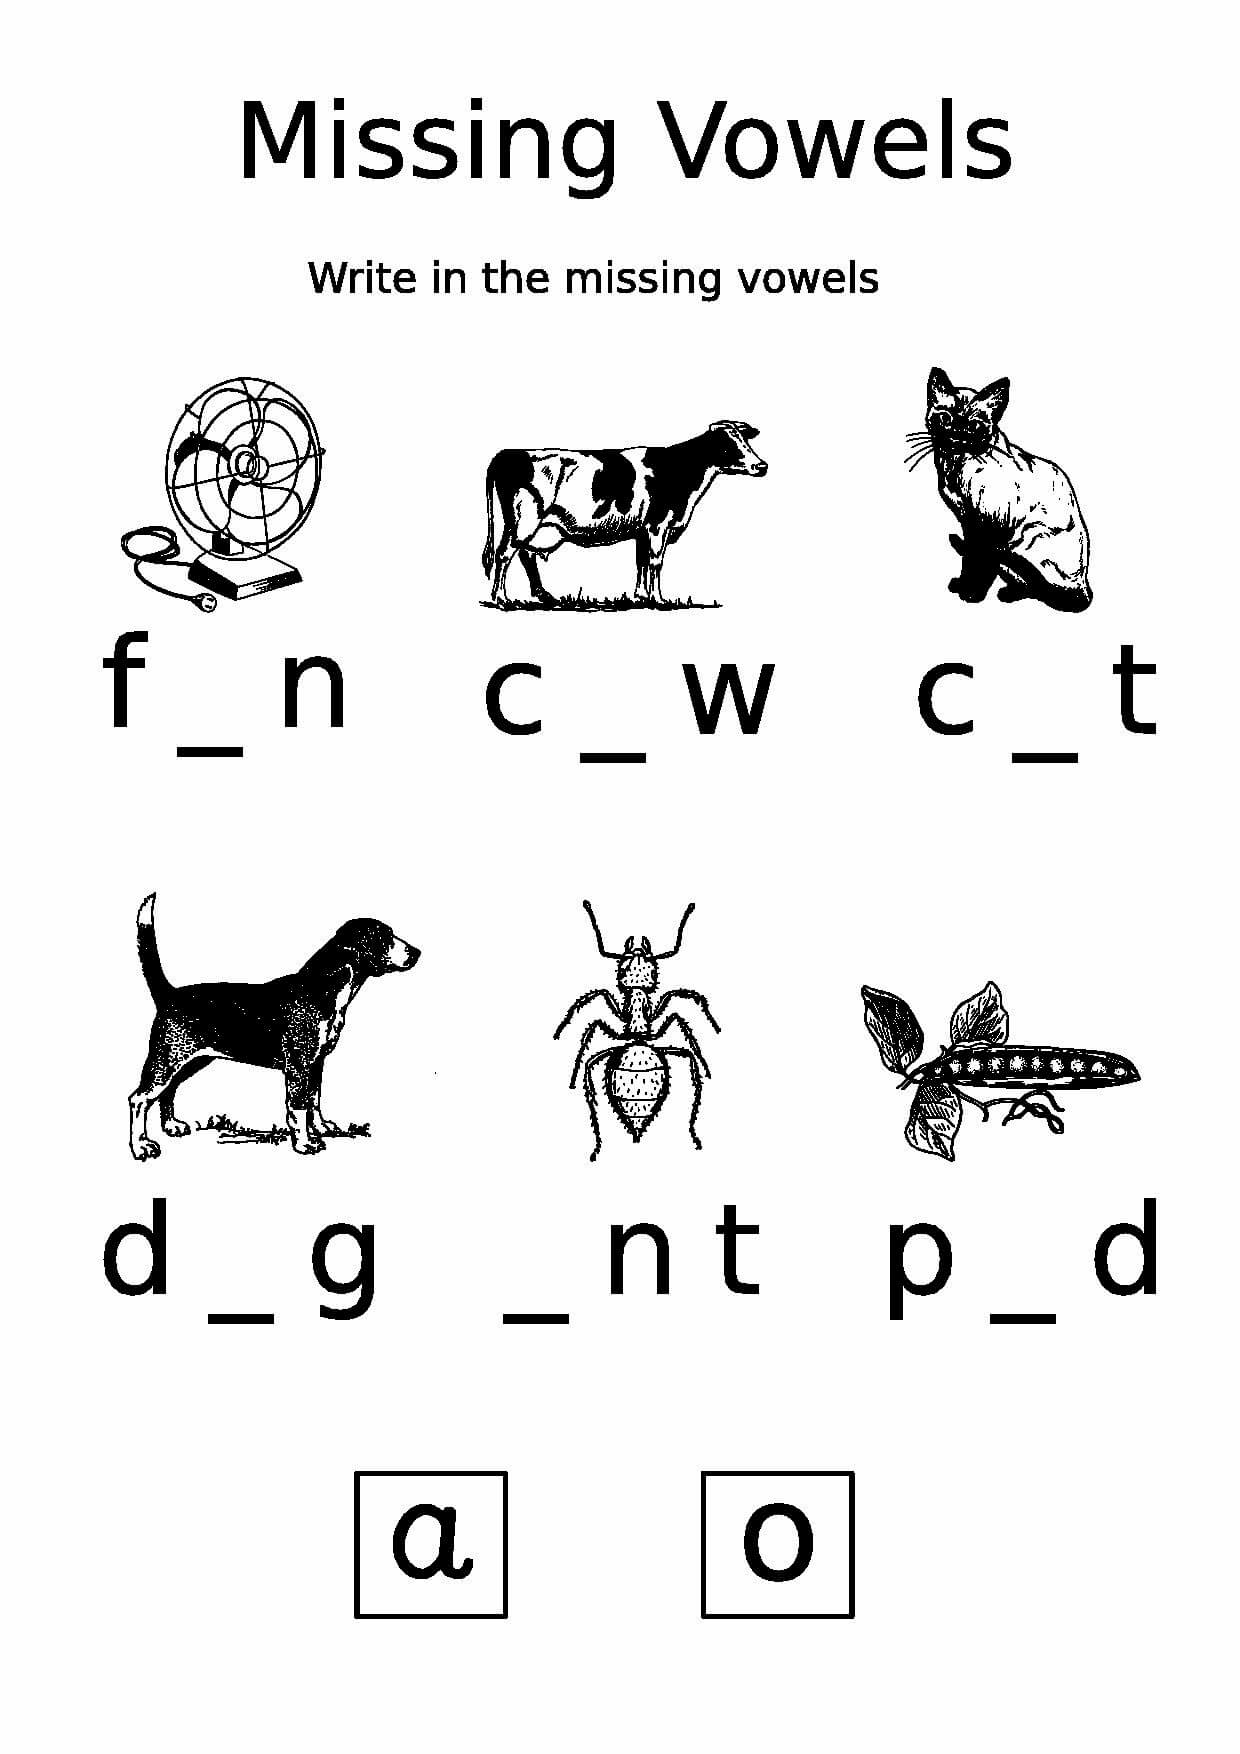 Missing Vowels Worksheet | Free Printable Puzzle Games - Printable Missing Vowels Puzzles